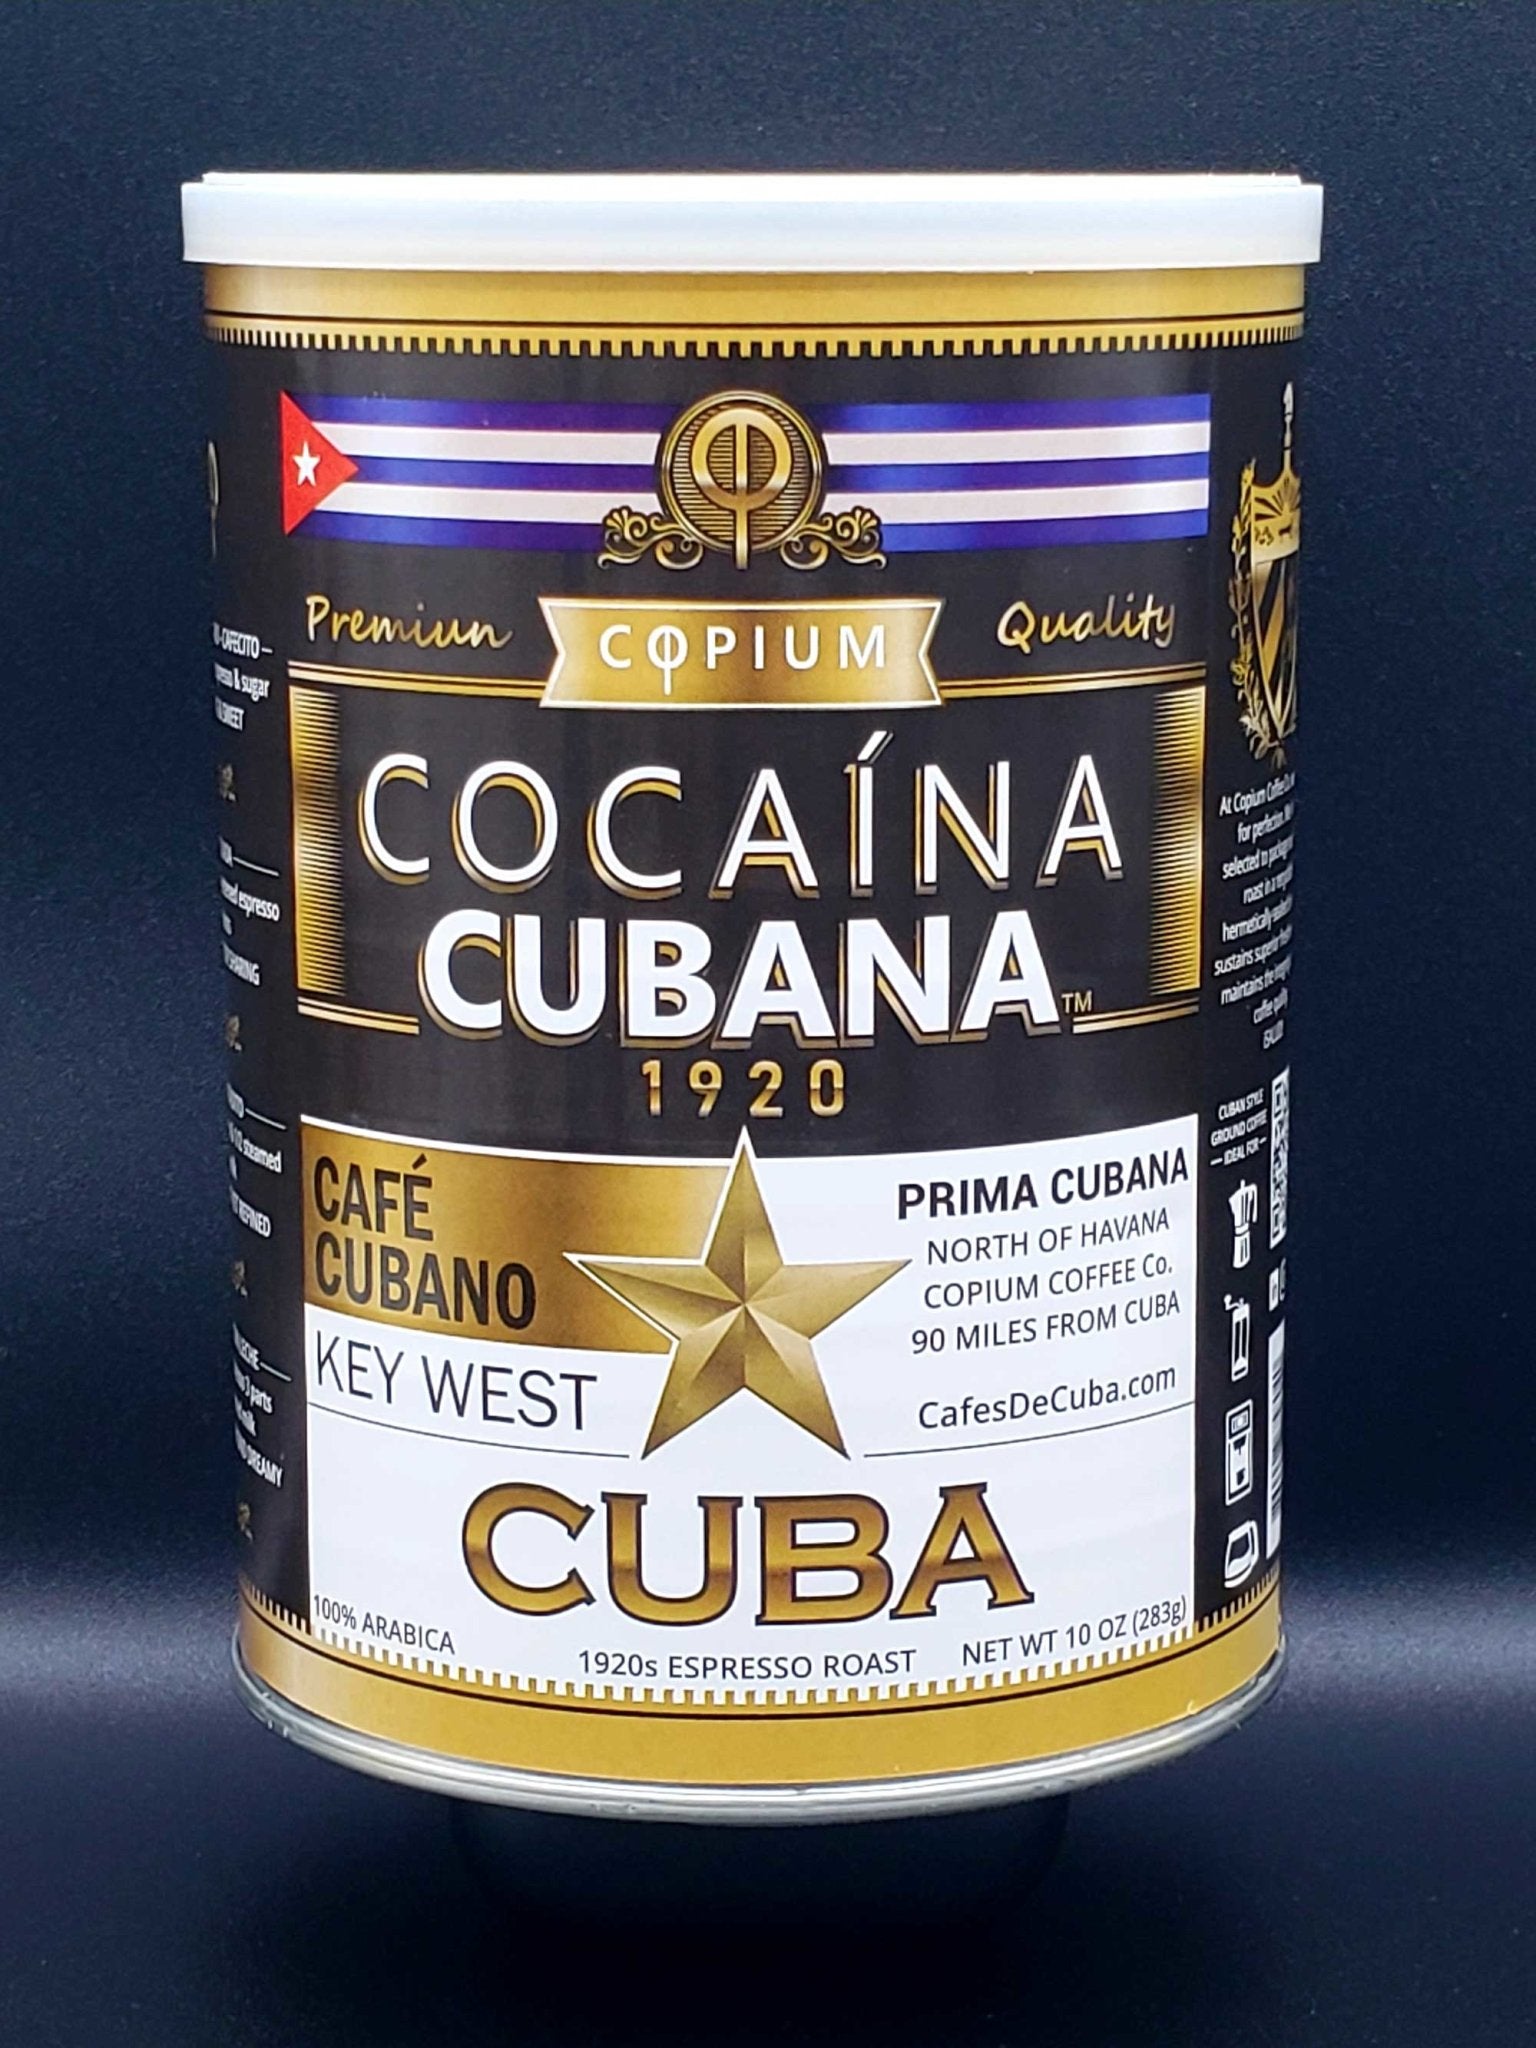 Café Cubano (Cuban Coffee)